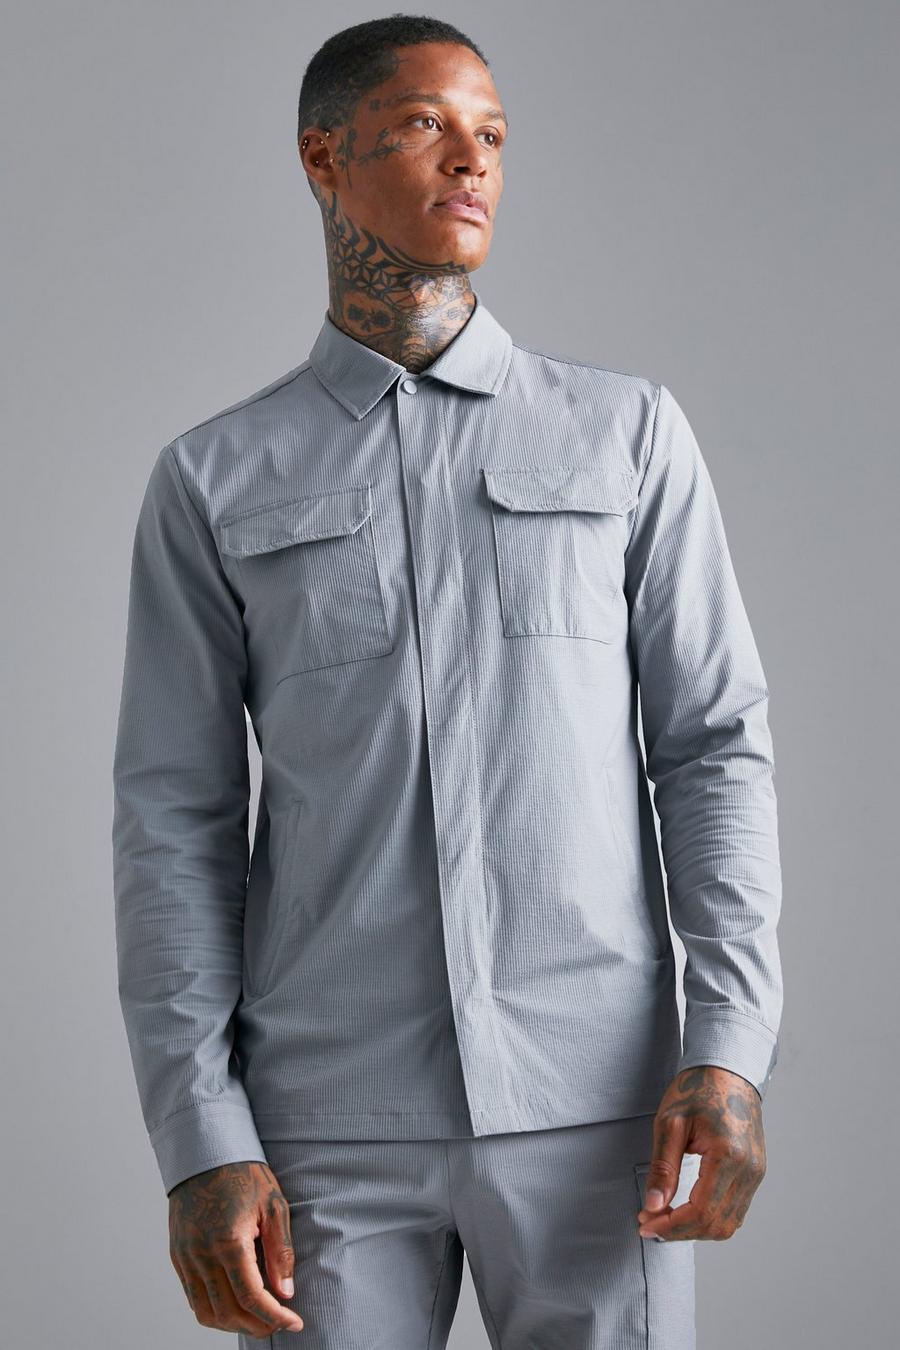 אפור gris חולצה עליונה קלת משקל בסגנון שימושי עם דוגמת סירסאקר